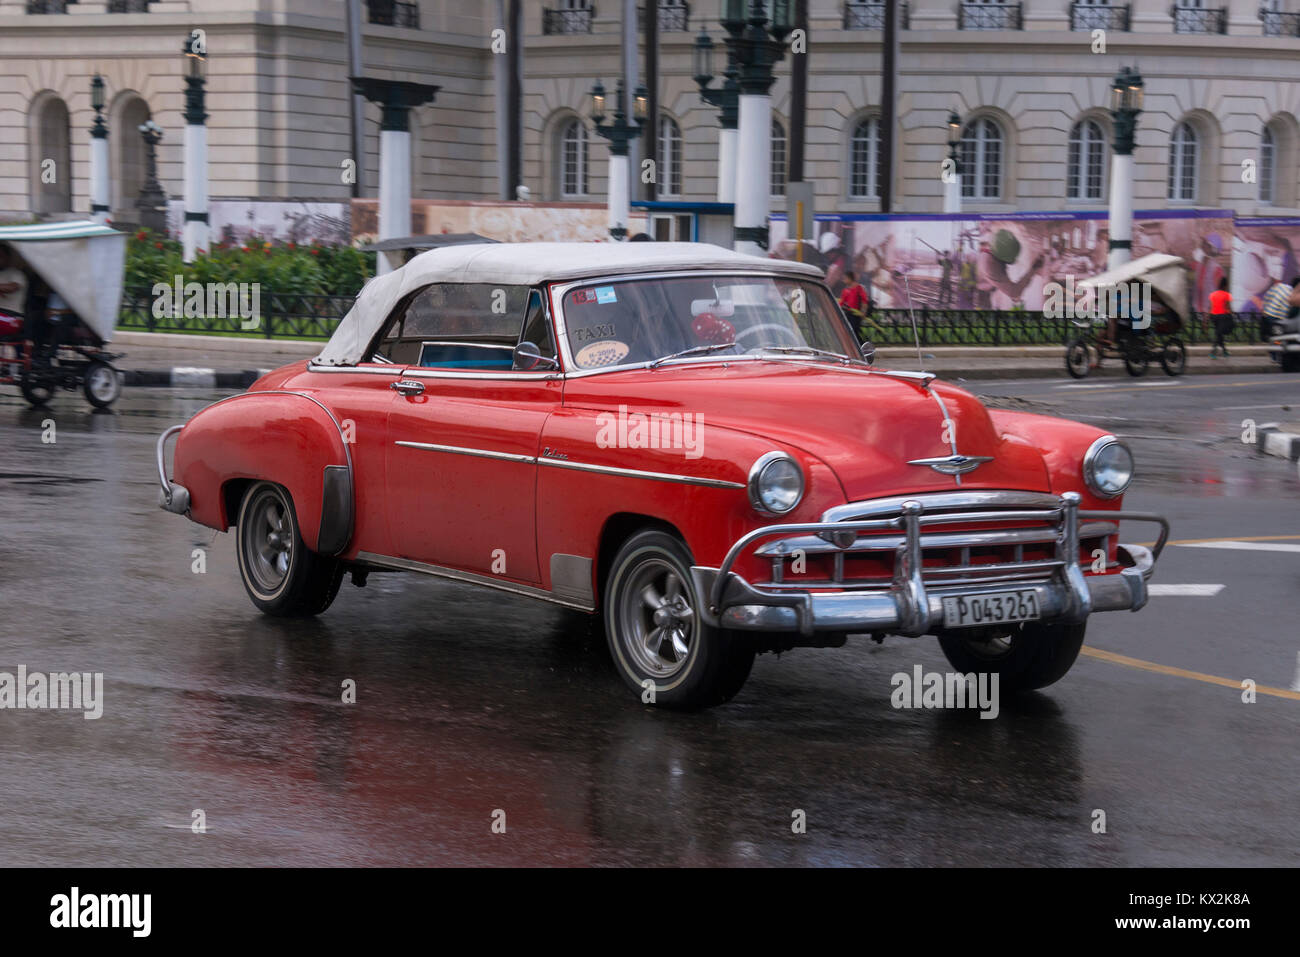 Un vieux modèle convertible en circulation, près de la capitale de La Havane, Cuba Banque D'Images